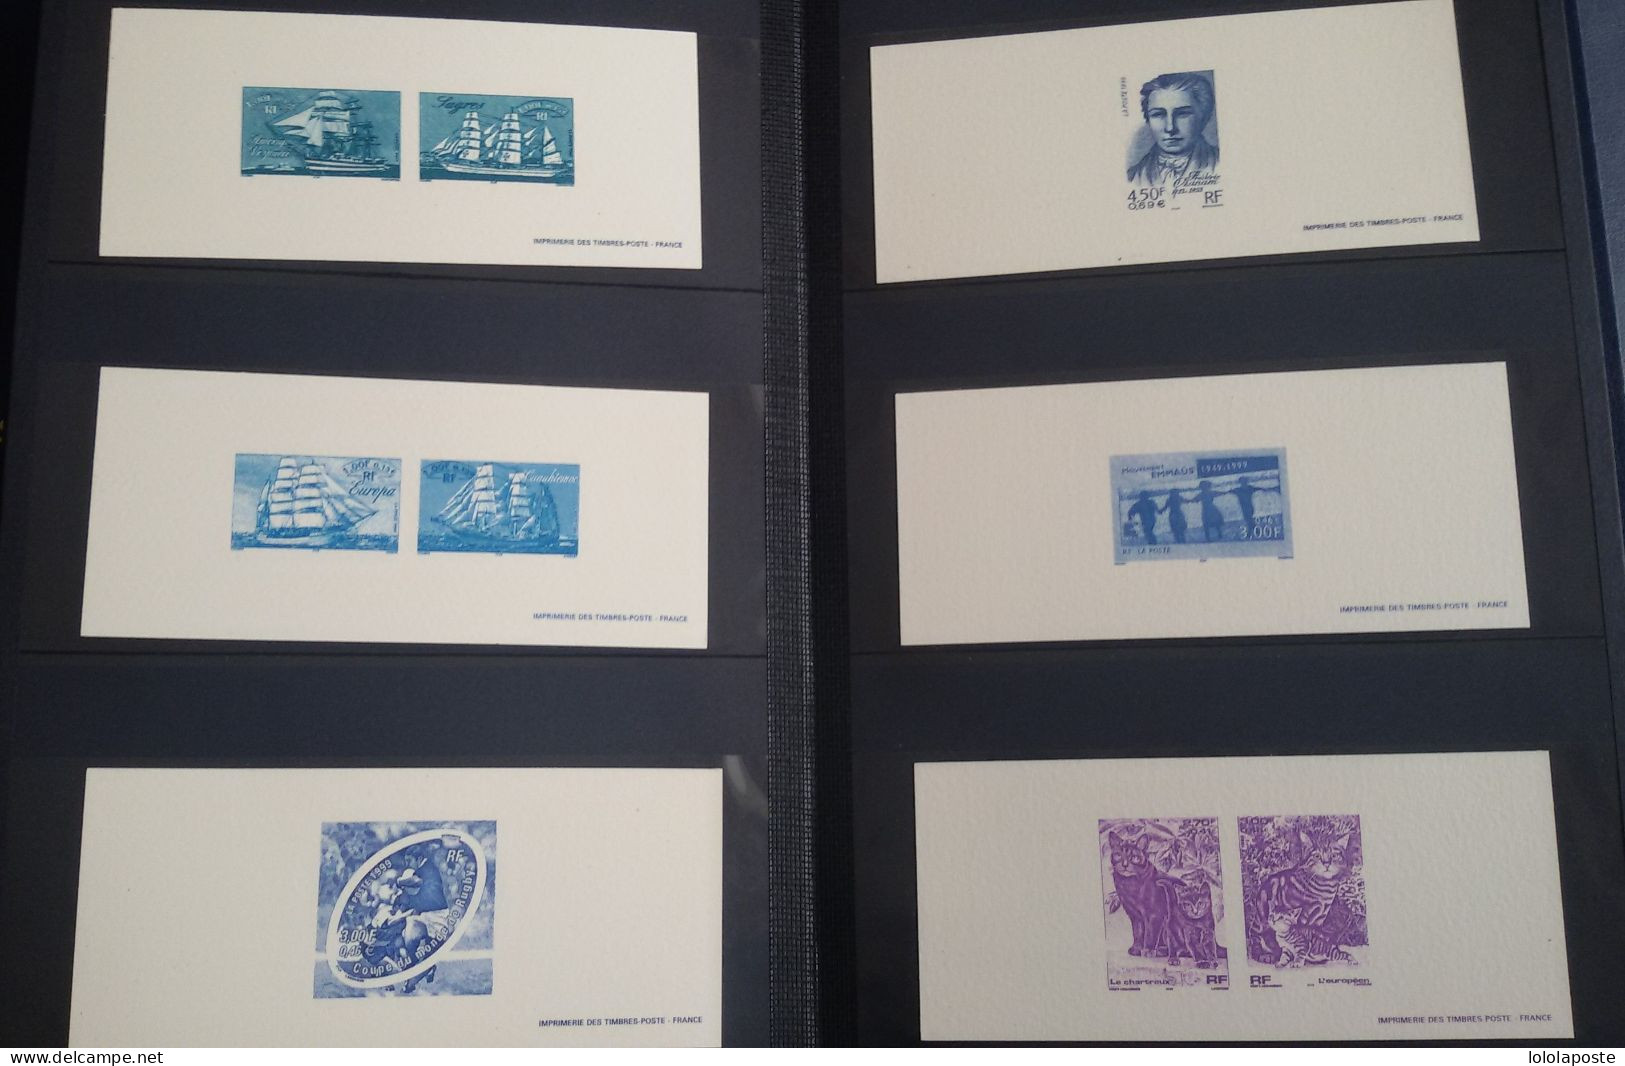 FRANCE -Collection de 876 gravures différentes de la poste dans 15 classeurs spécifiques de l'année 1995 à 2010 A SAISIR